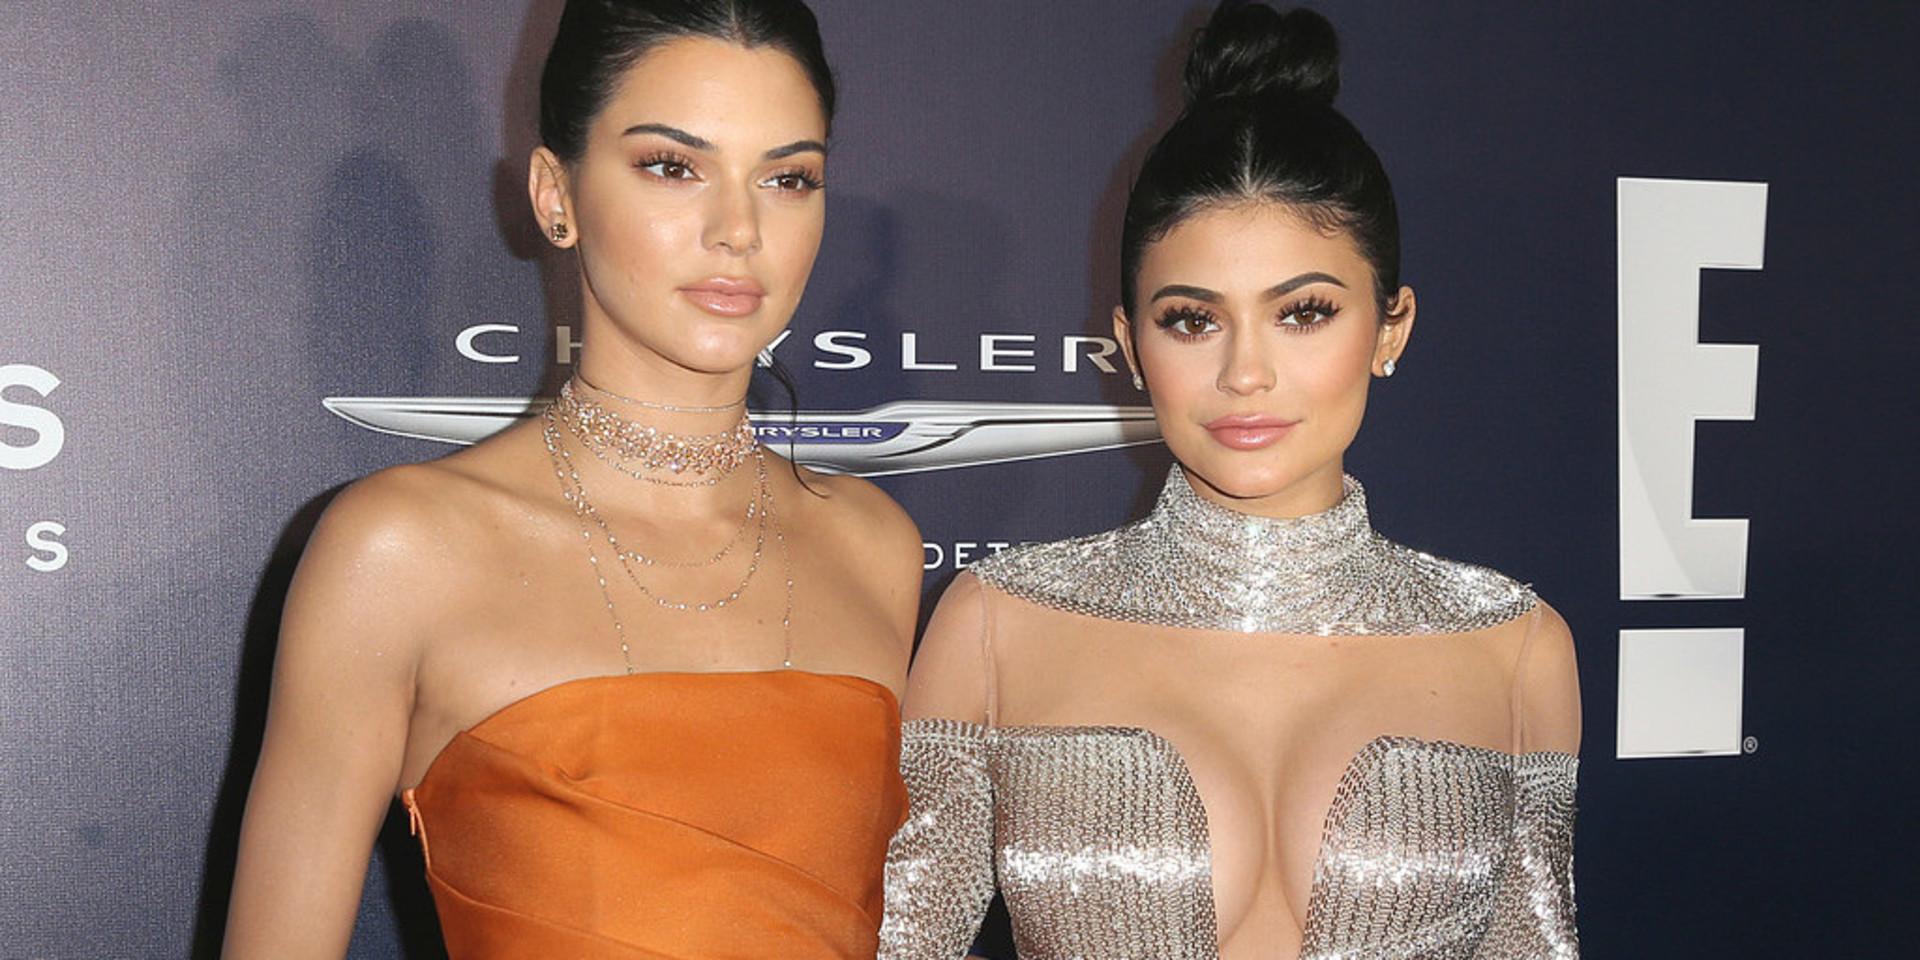 Kylie Jenner, till höger i bild, är världens yngsta dollarmiljardär enligt Forbes. Här tillsammans med sin syster Kendall Jenner. 